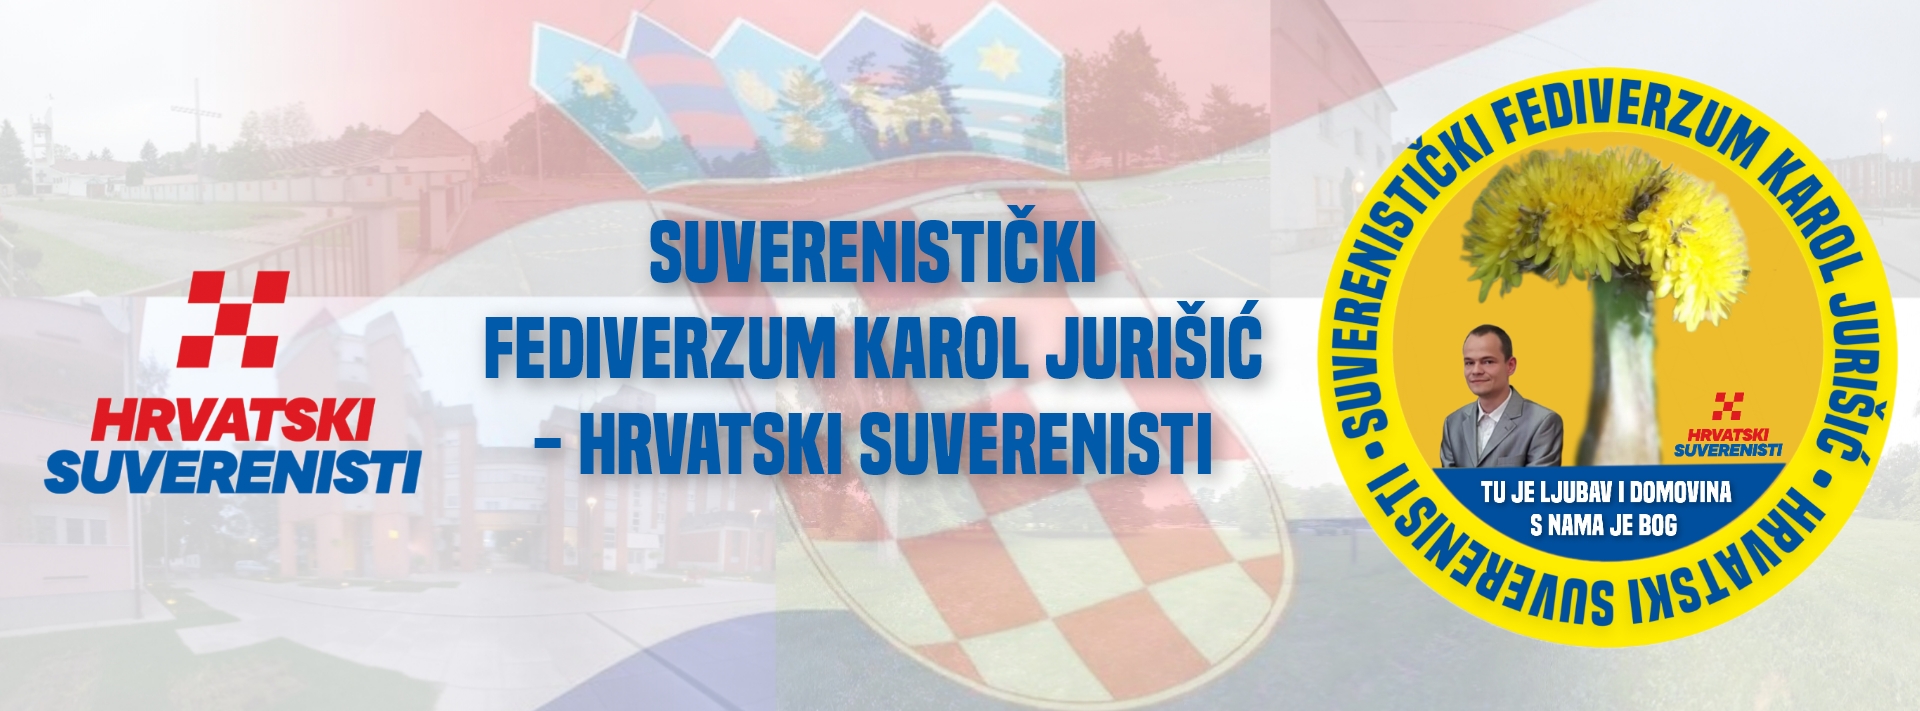 Suverenistički fediverzum Karol Jurišić (HS)